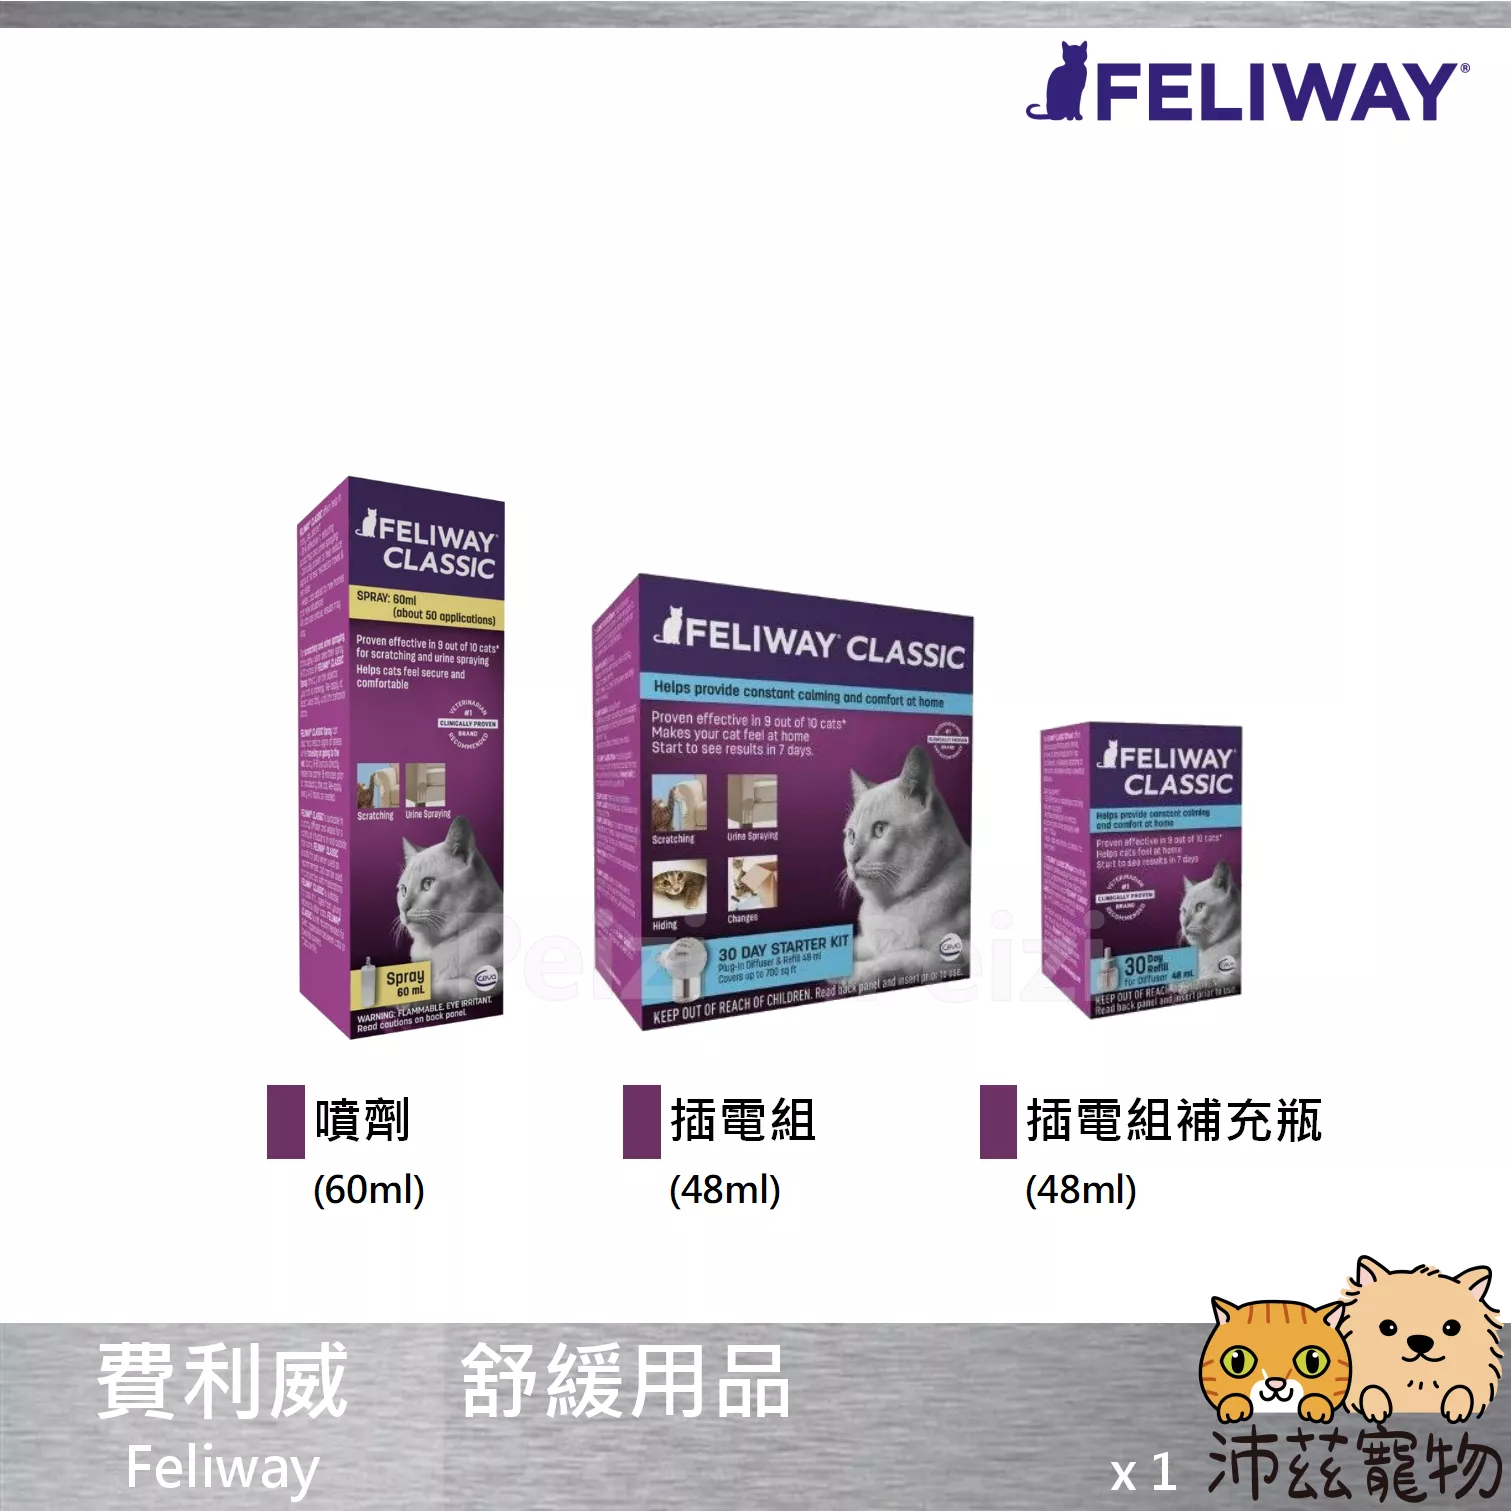 【費利威 Feliway 舒緩用品】費洛貓 情緒舒緩 噴劑 插電組 補充瓶 貓用品